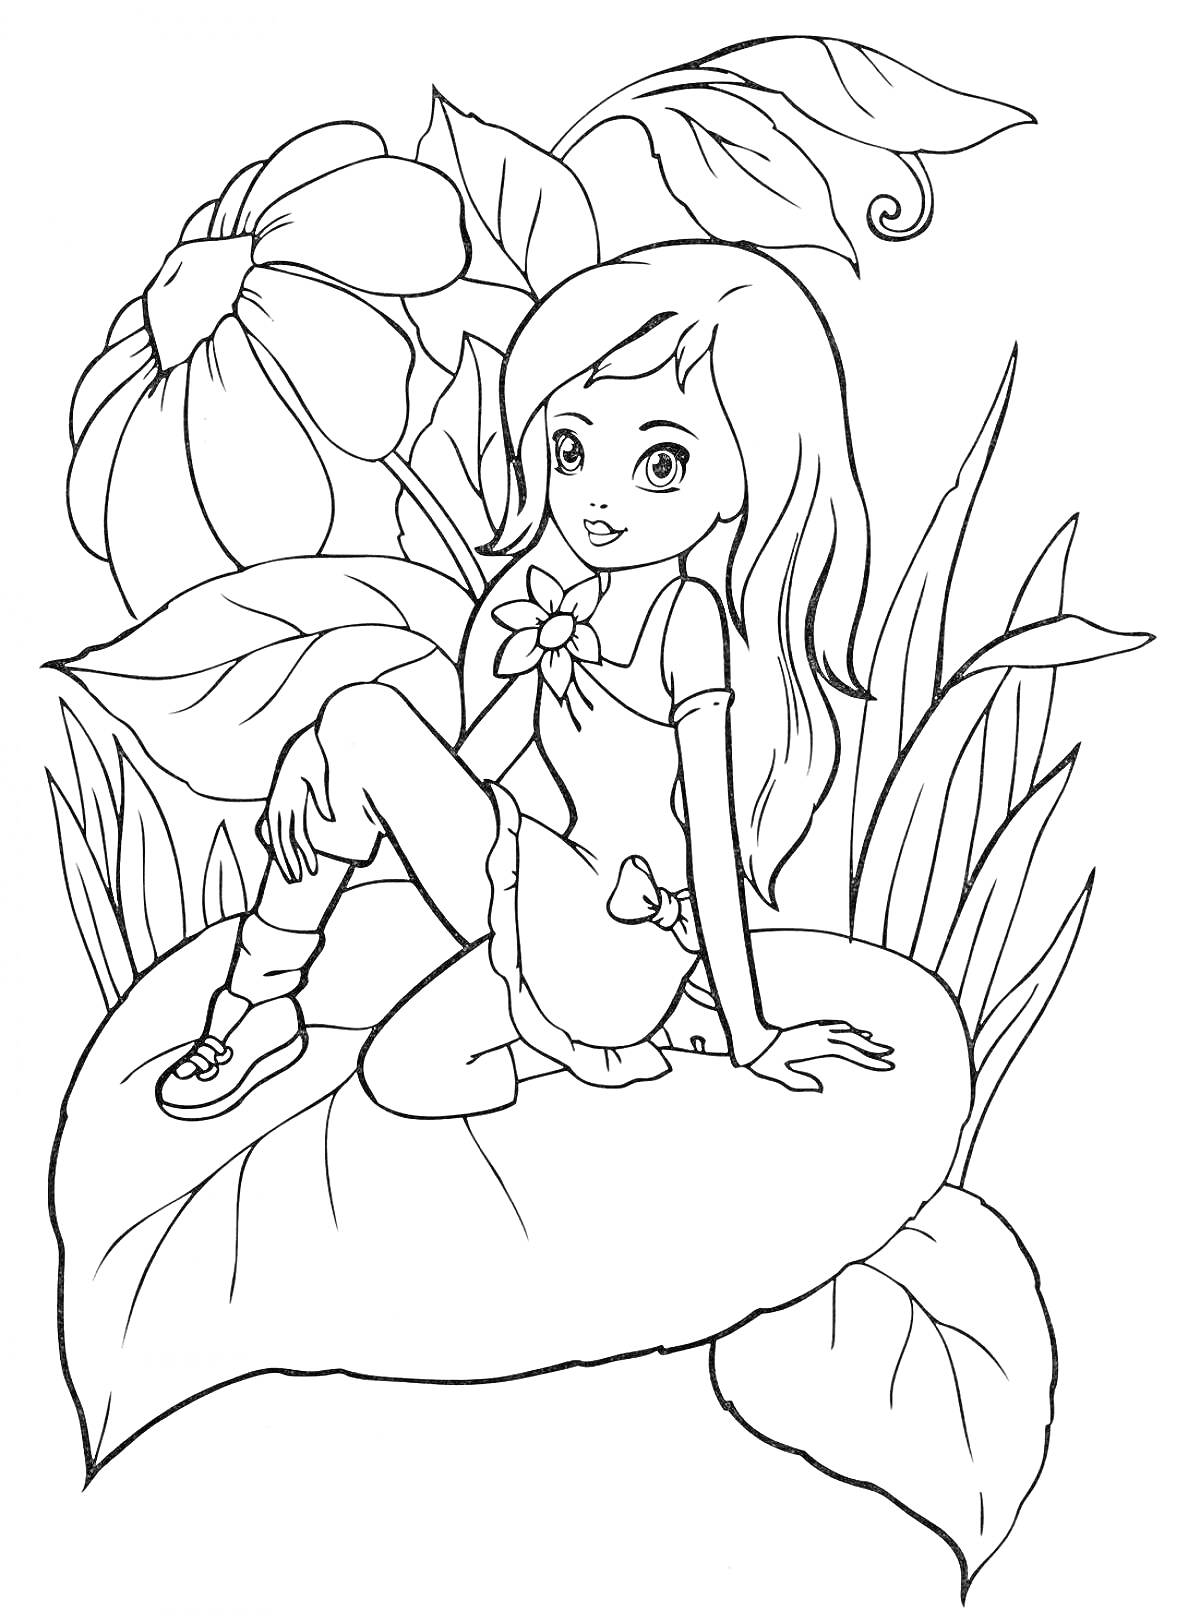 Раскраска Девочка на большом листе с цветами, листьями и травой